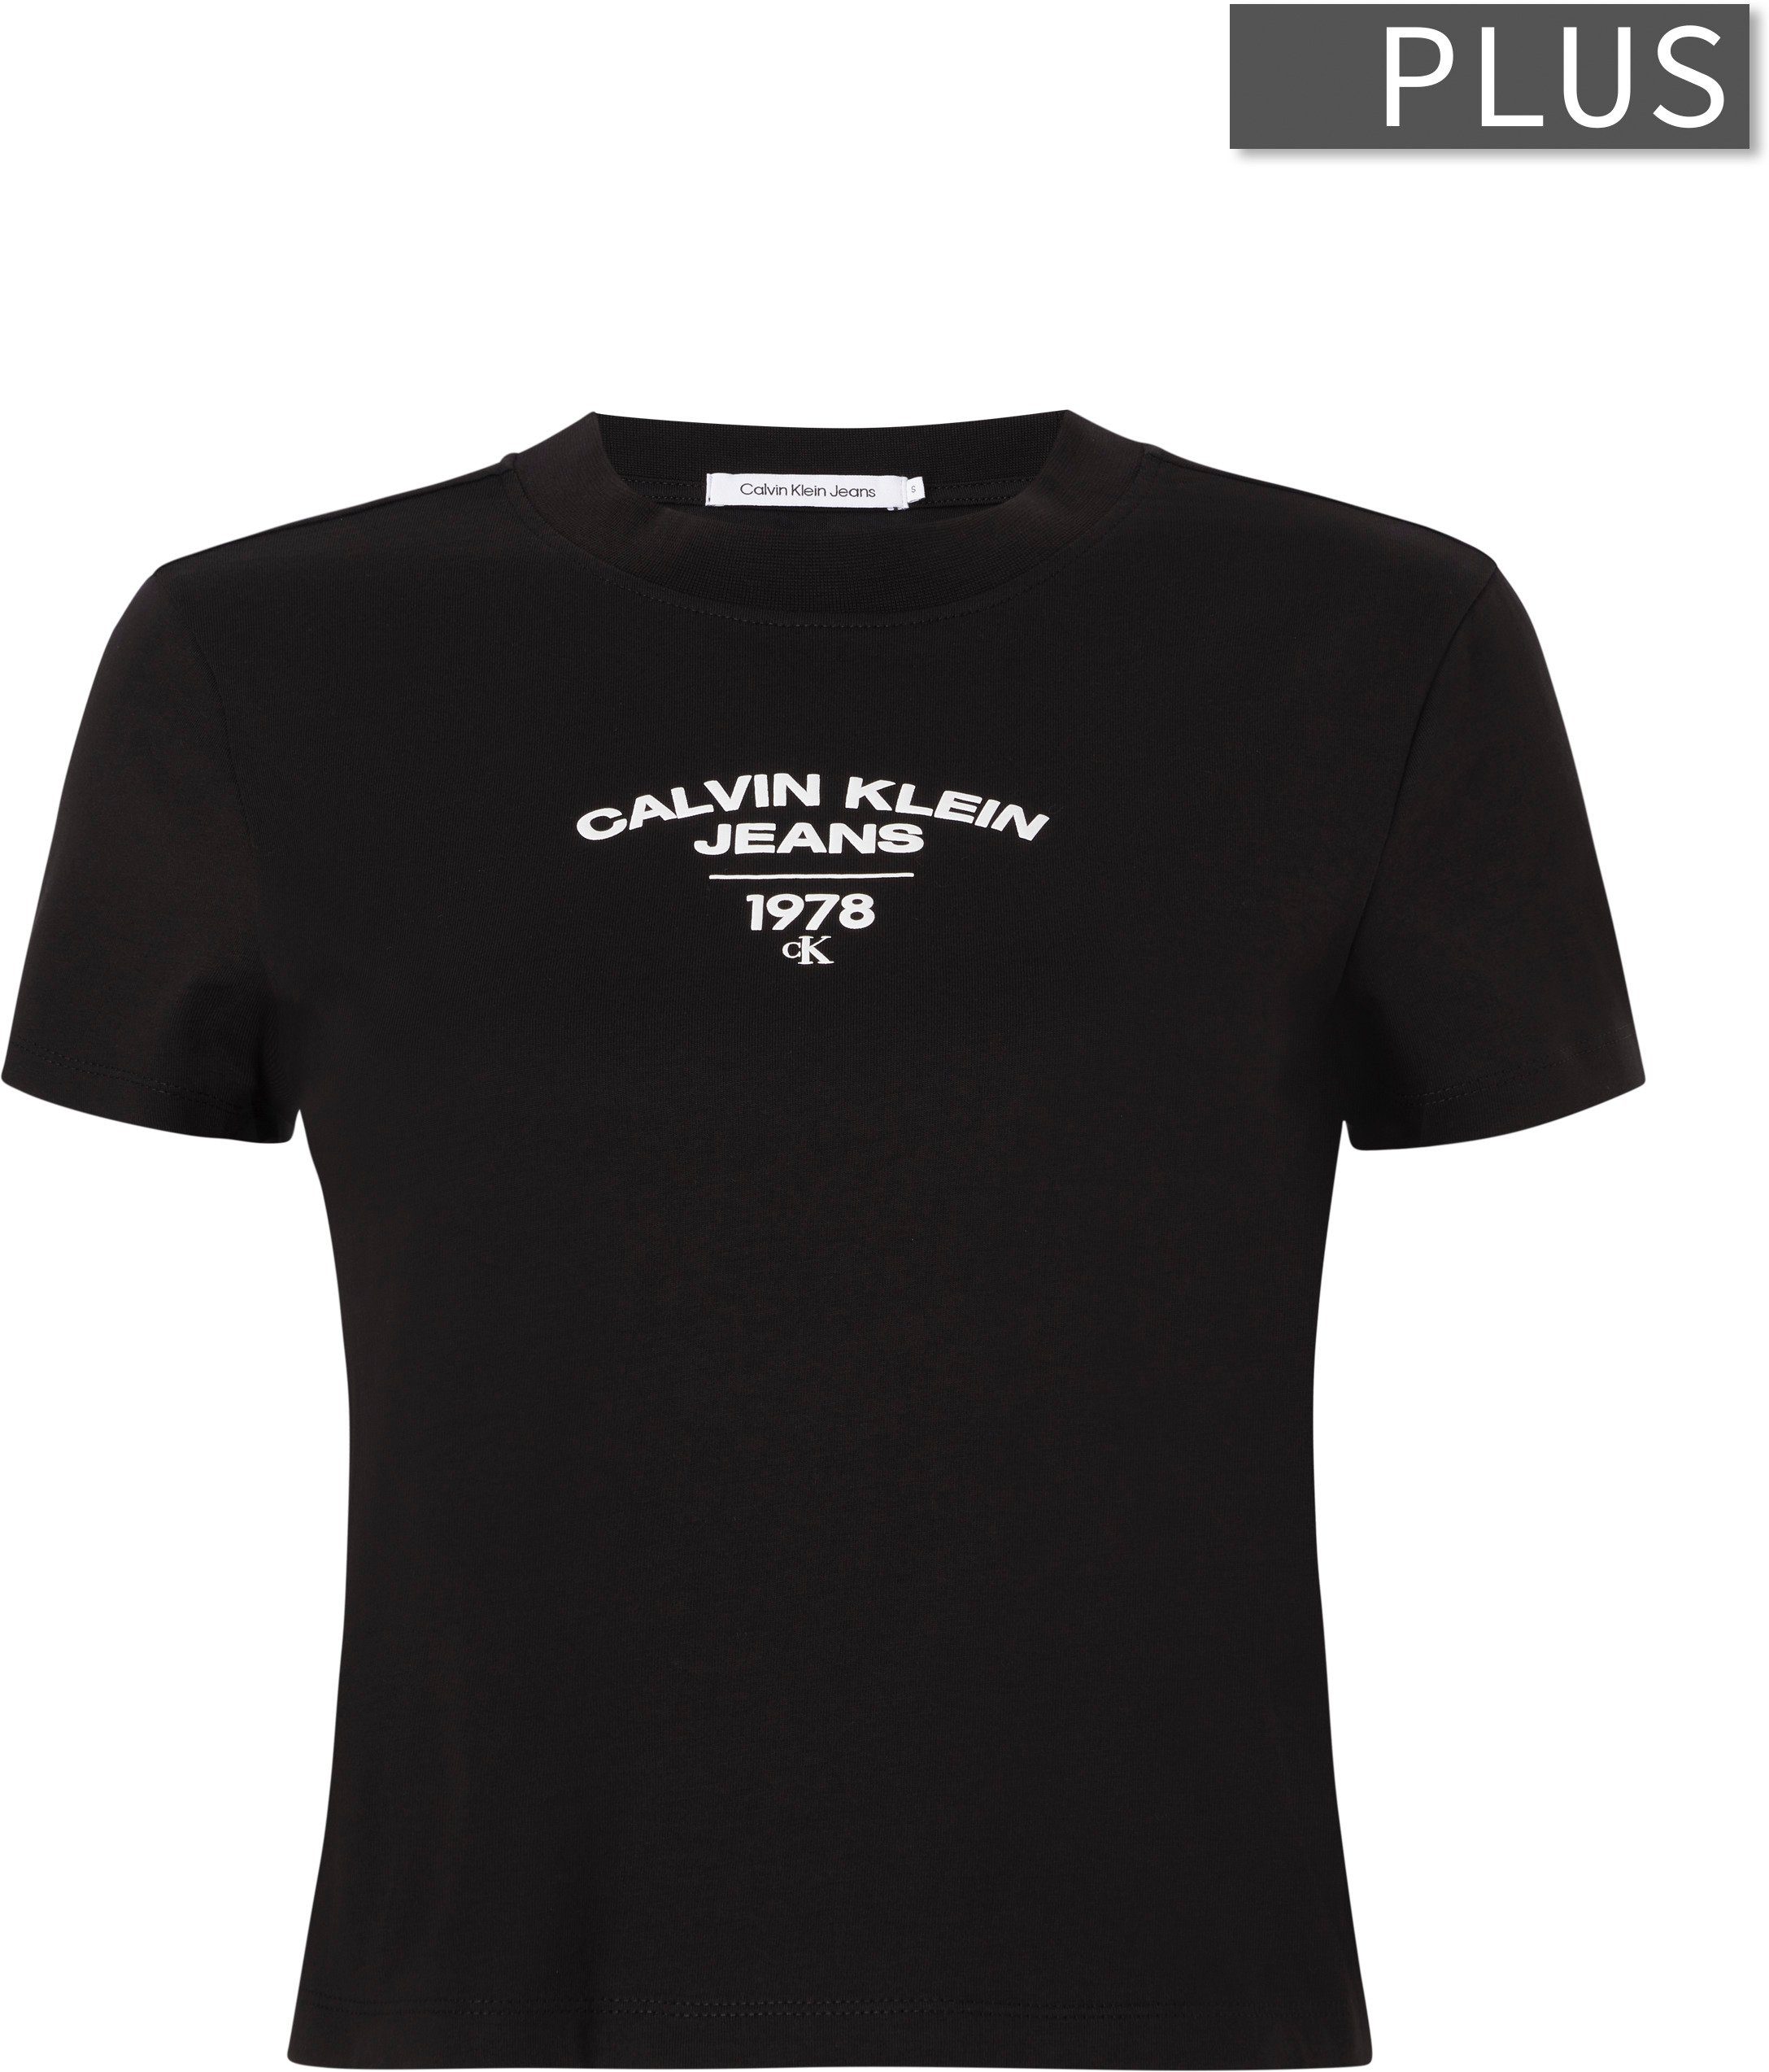 Klein REGULAR Ck Plus Calvin Jeans Black LOGO TEE VARISTY T-Shirt PLUS